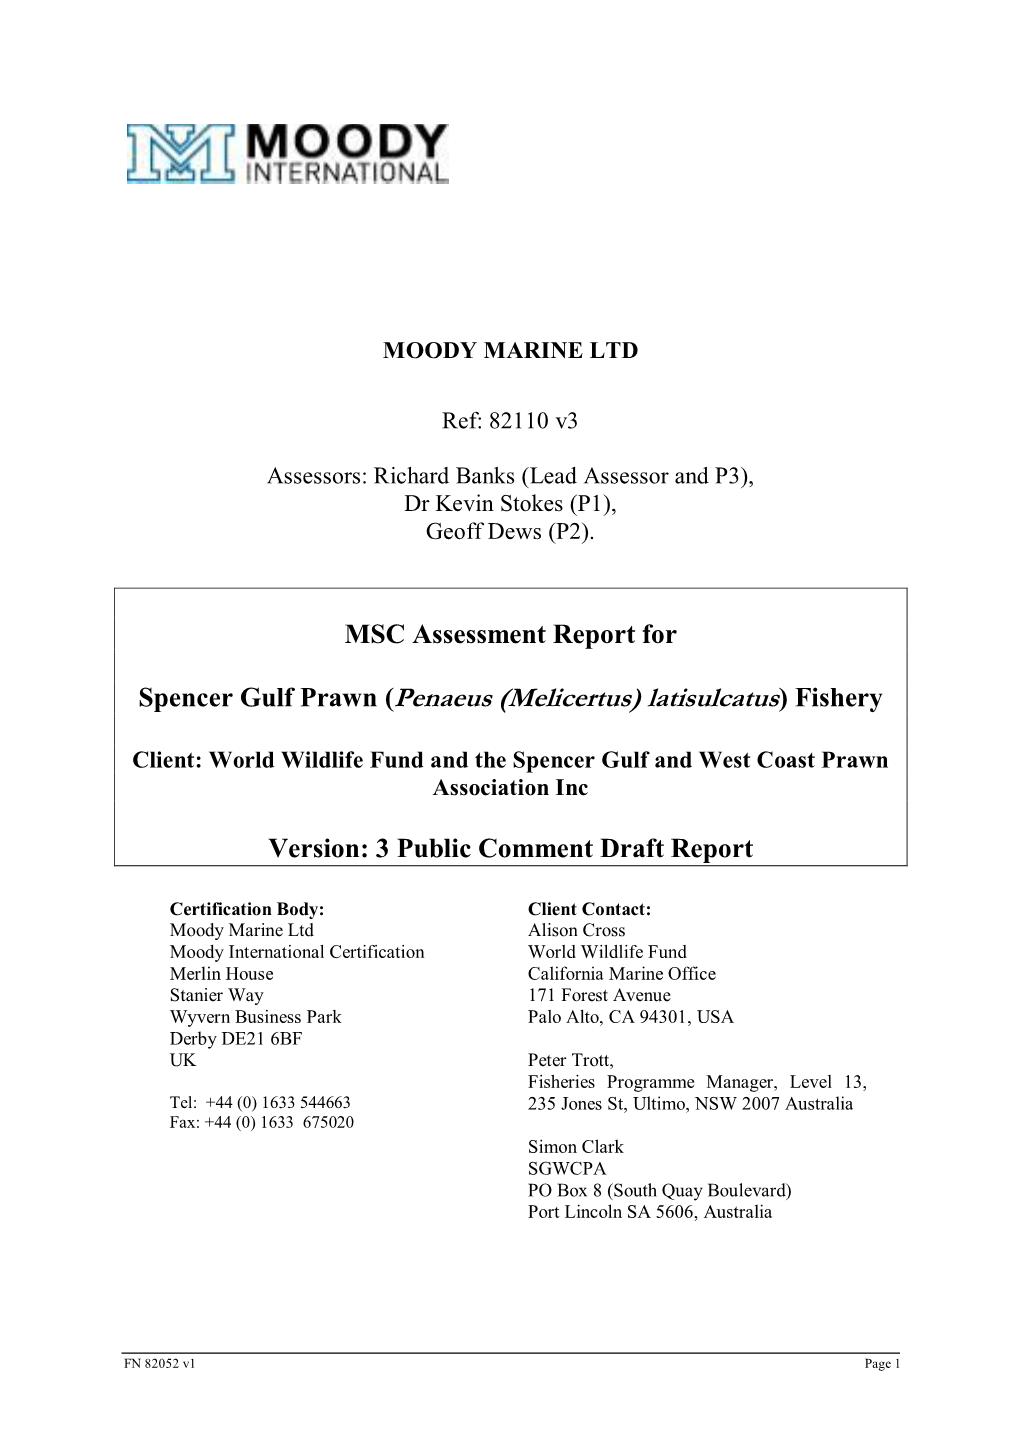 MSC Assessment Report for Spencer Gulf Prawn